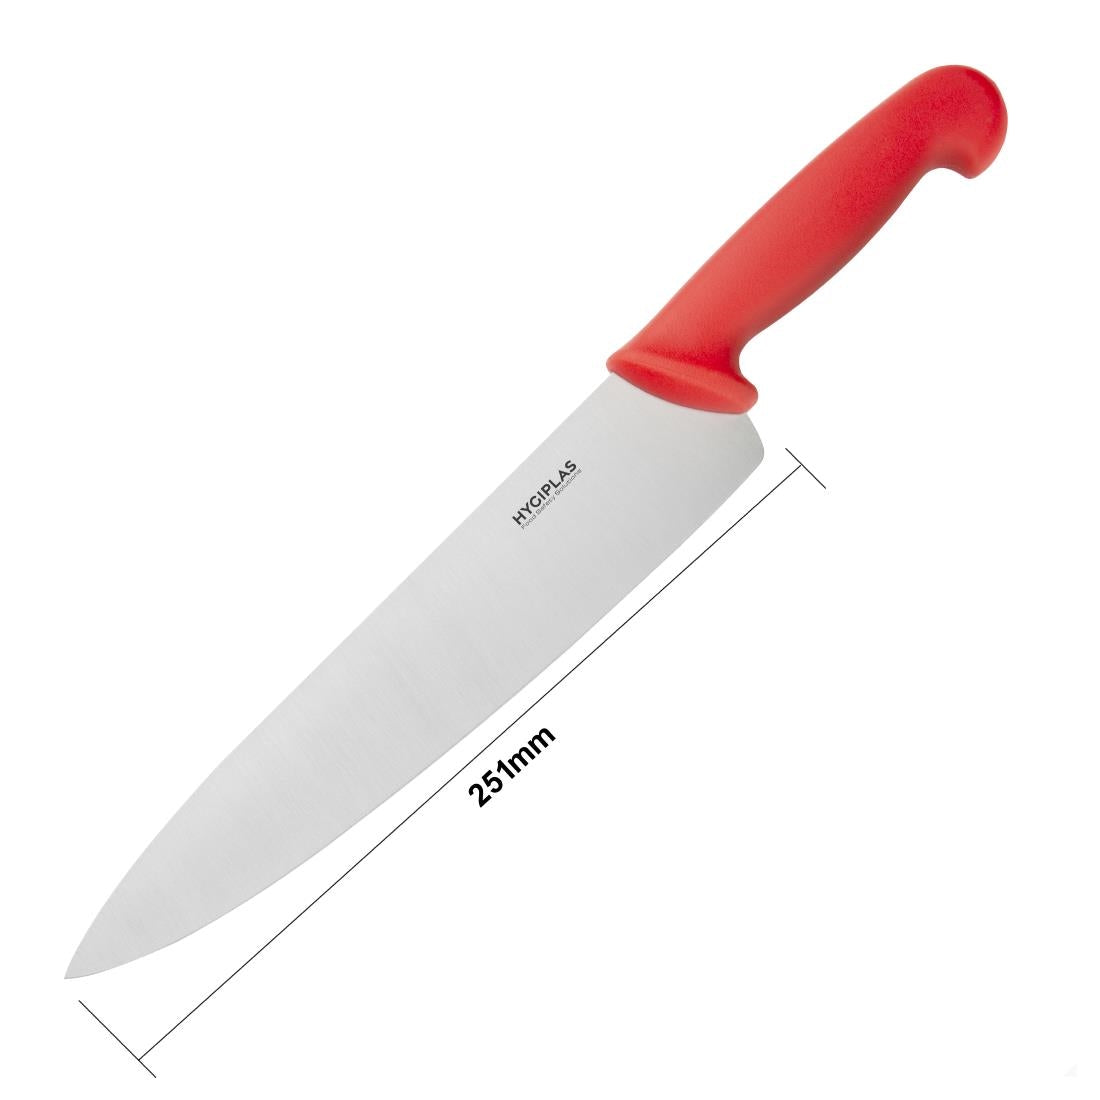 EDLP - Hygiplas Cooks Knife Red - 10"